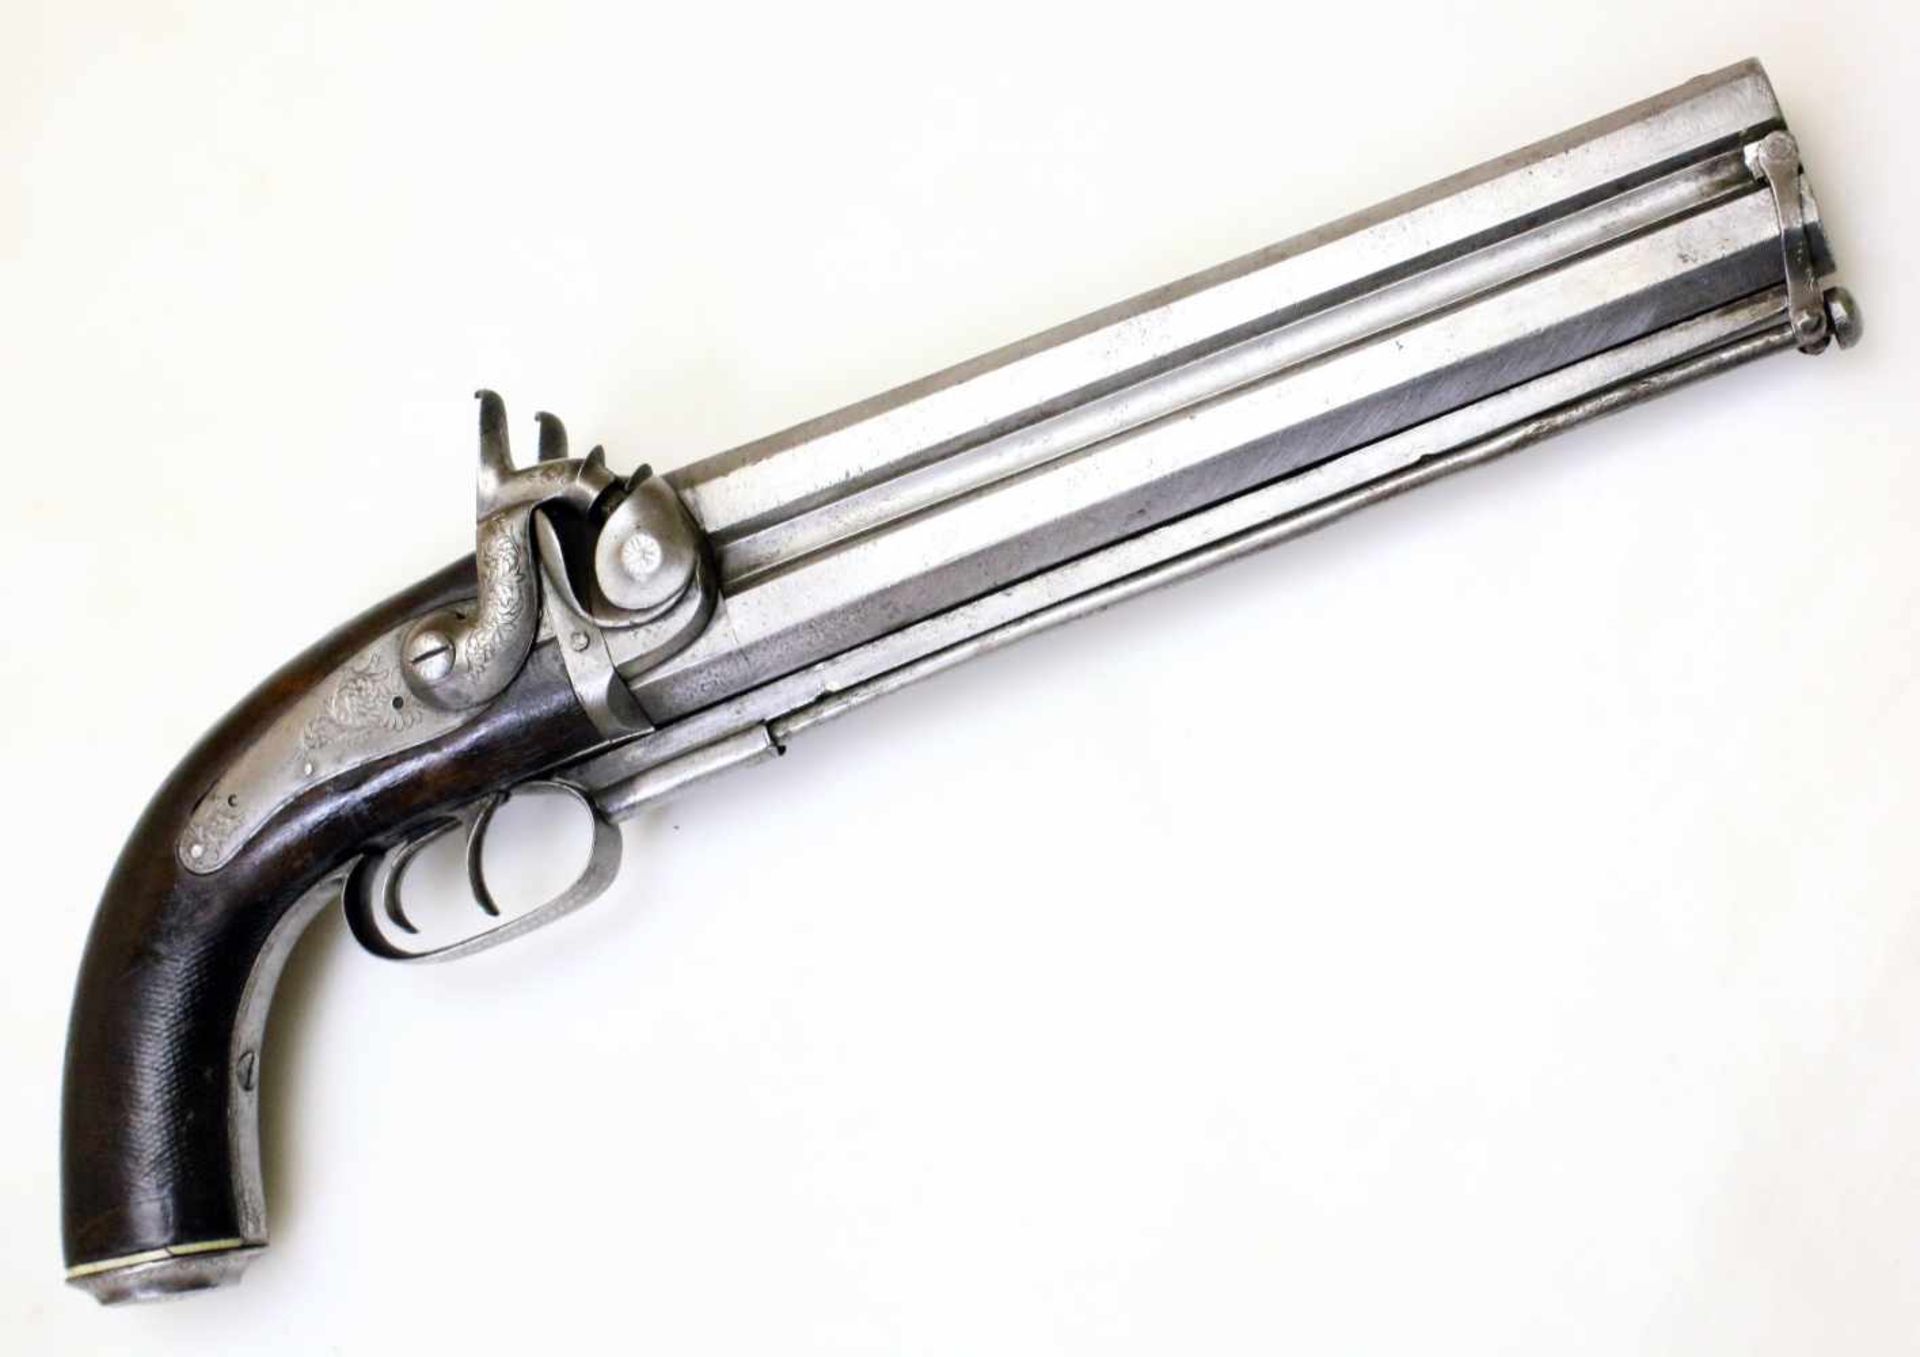 Doppelläufige Perkussionspistole - England um 1850 Cal. 14mm Perk., Zustand 2. Zwei übereinander